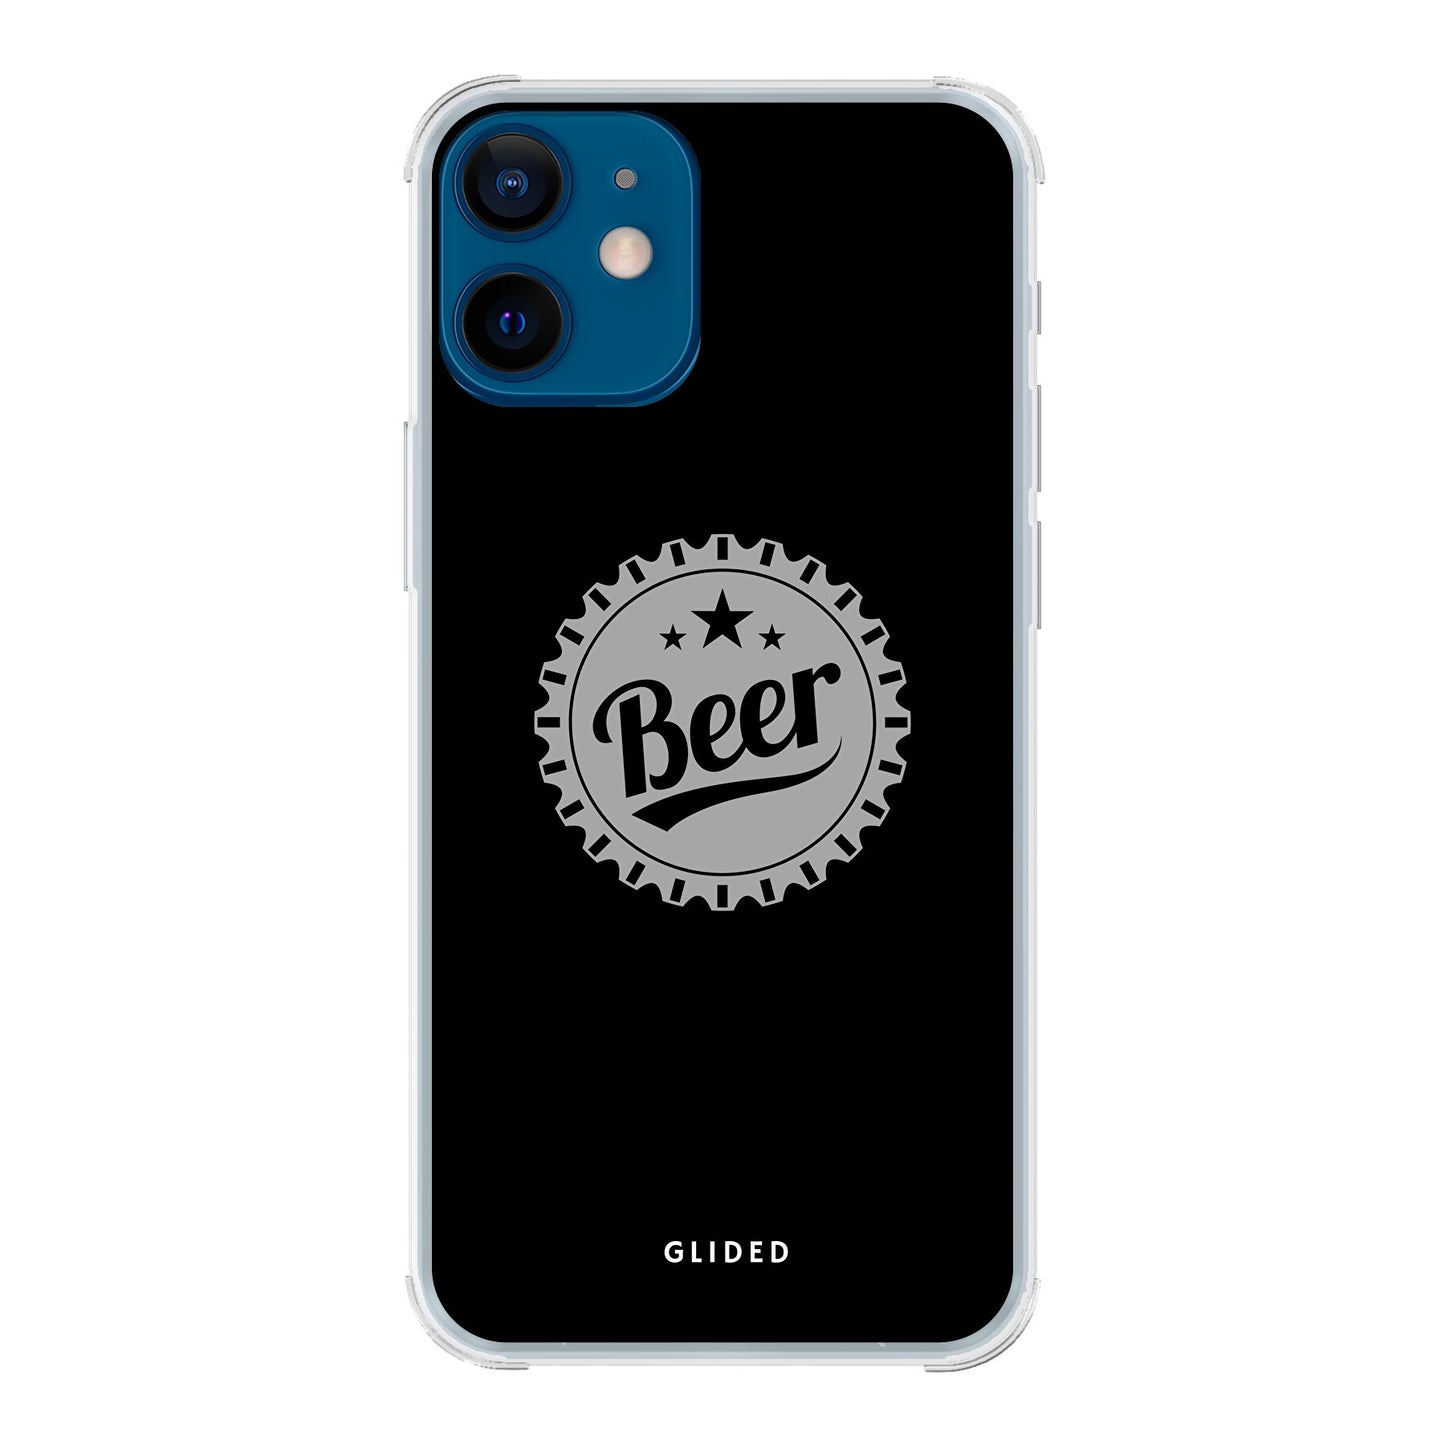 Cheers - iPhone 12 mini - Bumper case